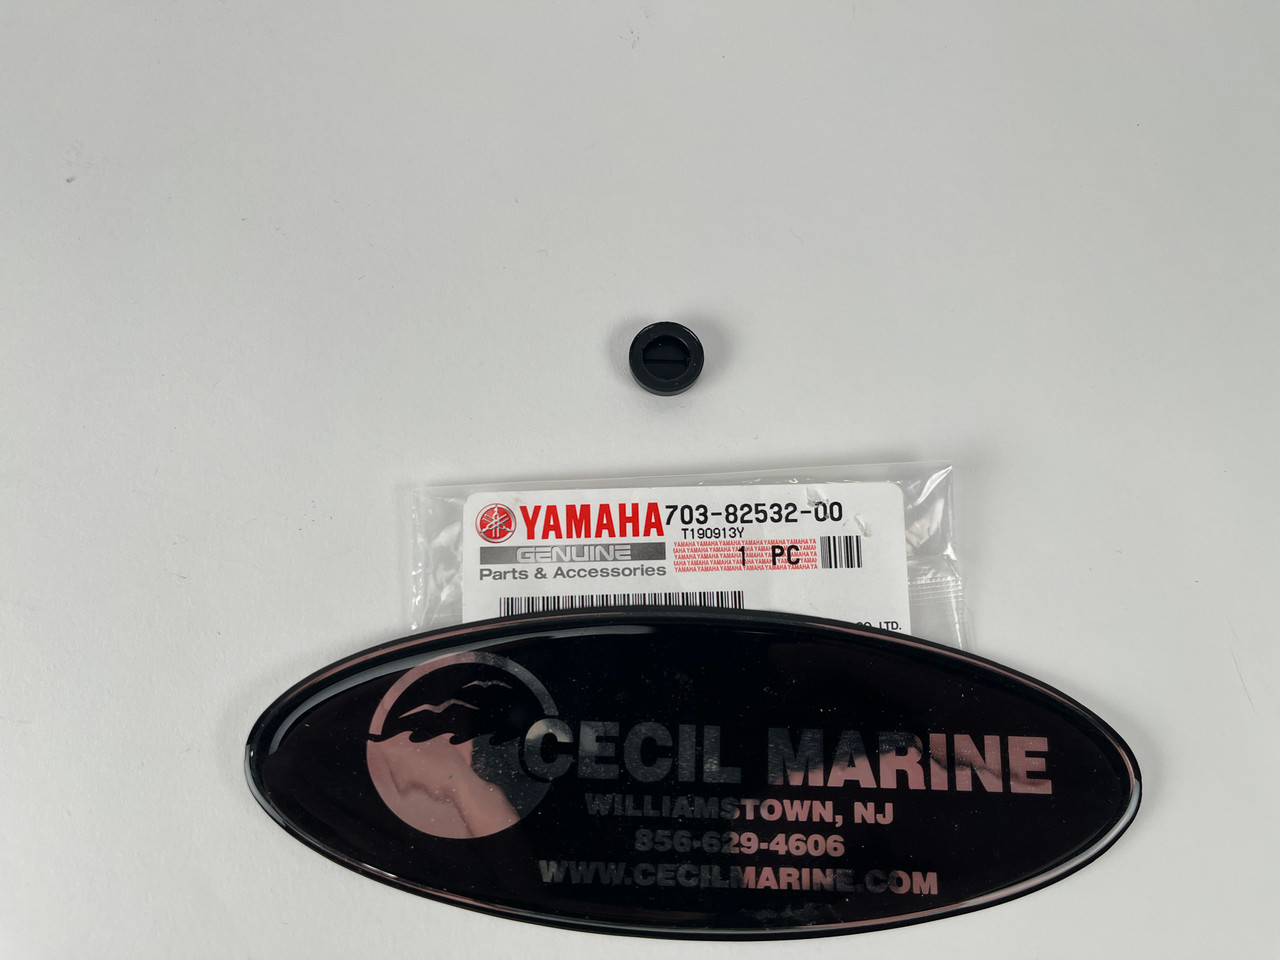 $8.99* GENUINE YAMAHA KEY CAP  703-82532-00-00 *In Stock & Ready To Ship!